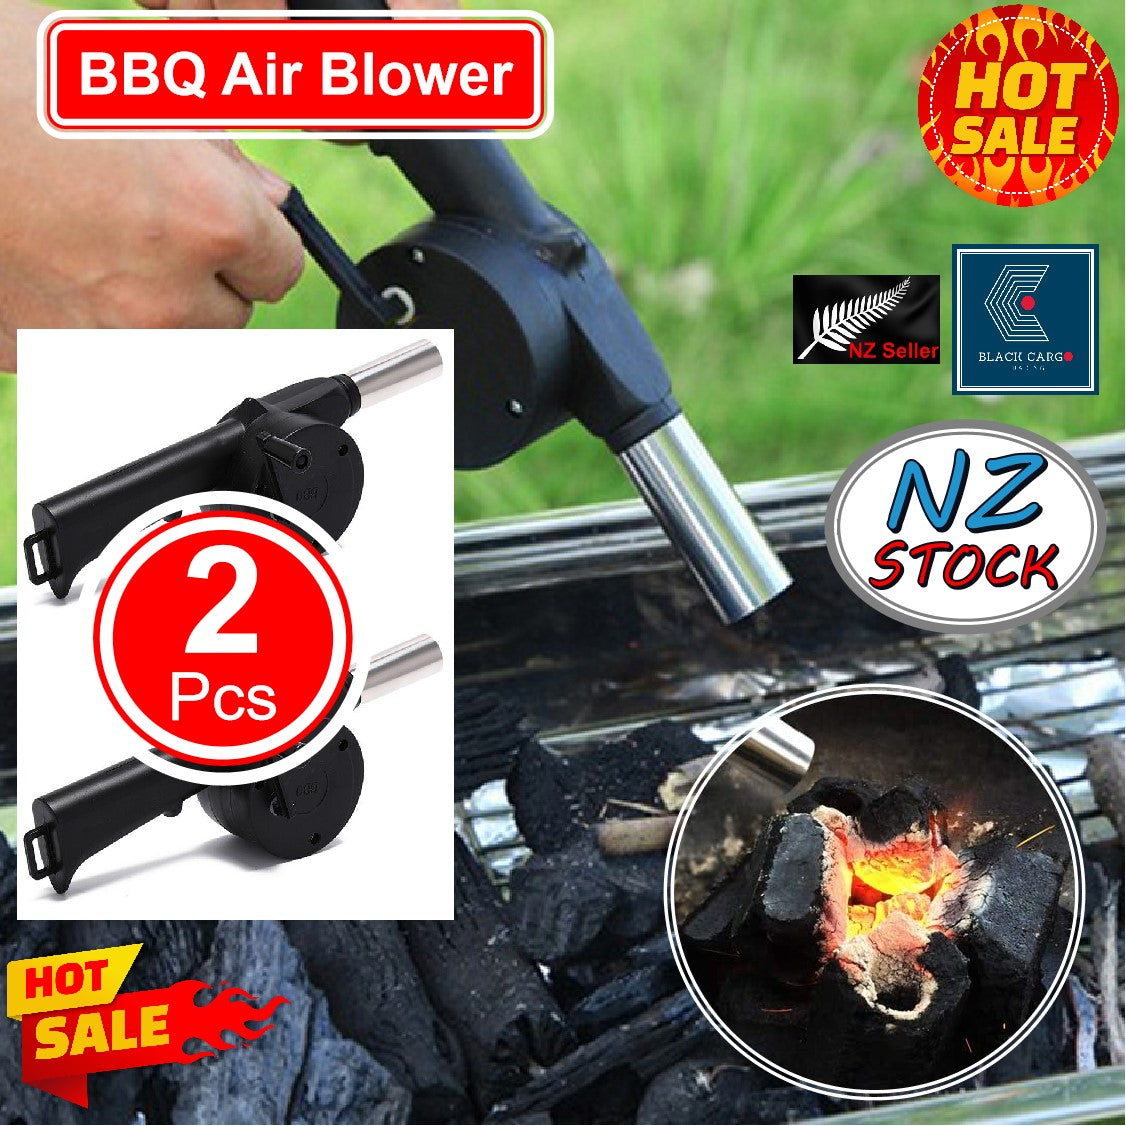 BBQ Fire Air Blower - Referdeal